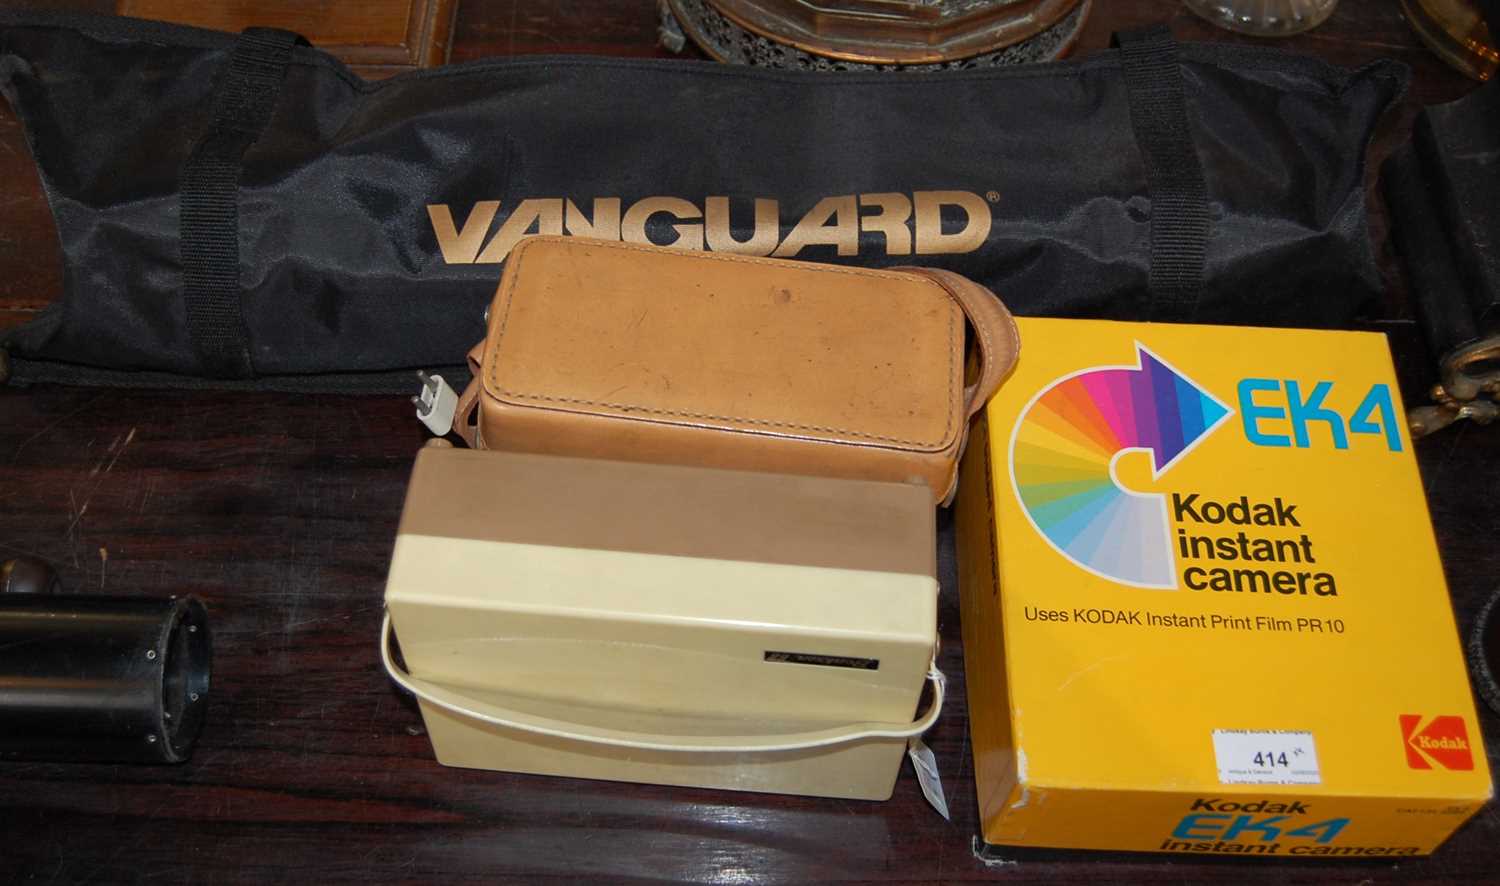 A mixed lot of digital equipment comprising a Kodak instant camera model EK4, a Vanguard tripod in